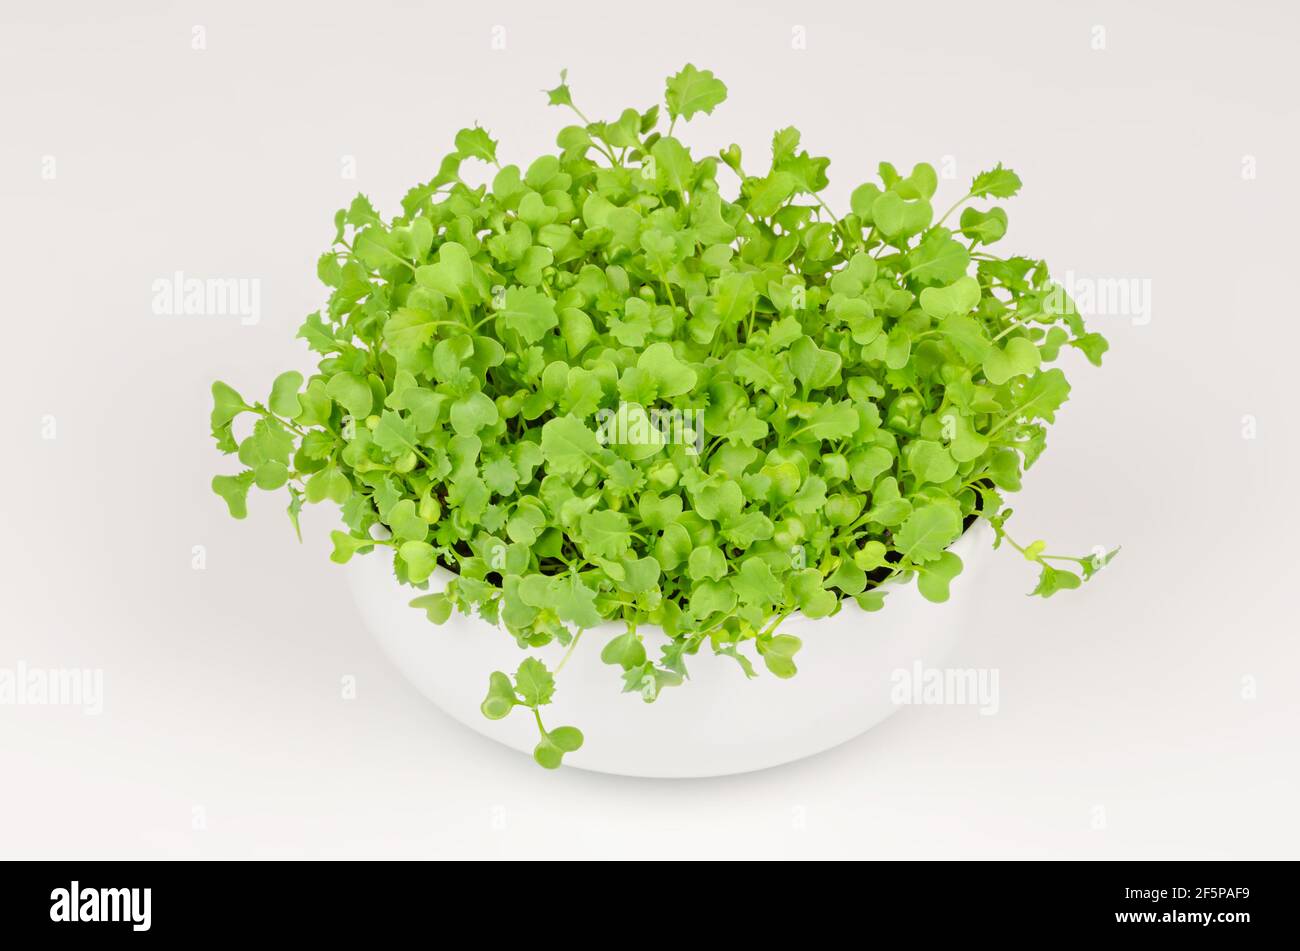 Kale Mikrogrüns in einer weißen Schale. Wachsende grüne Triebe von Blattkohl, Sämlinge und junge Pflanzen. Bereit zu essen, gekeimt lockiges Blatt Grünkohl. Stockfoto